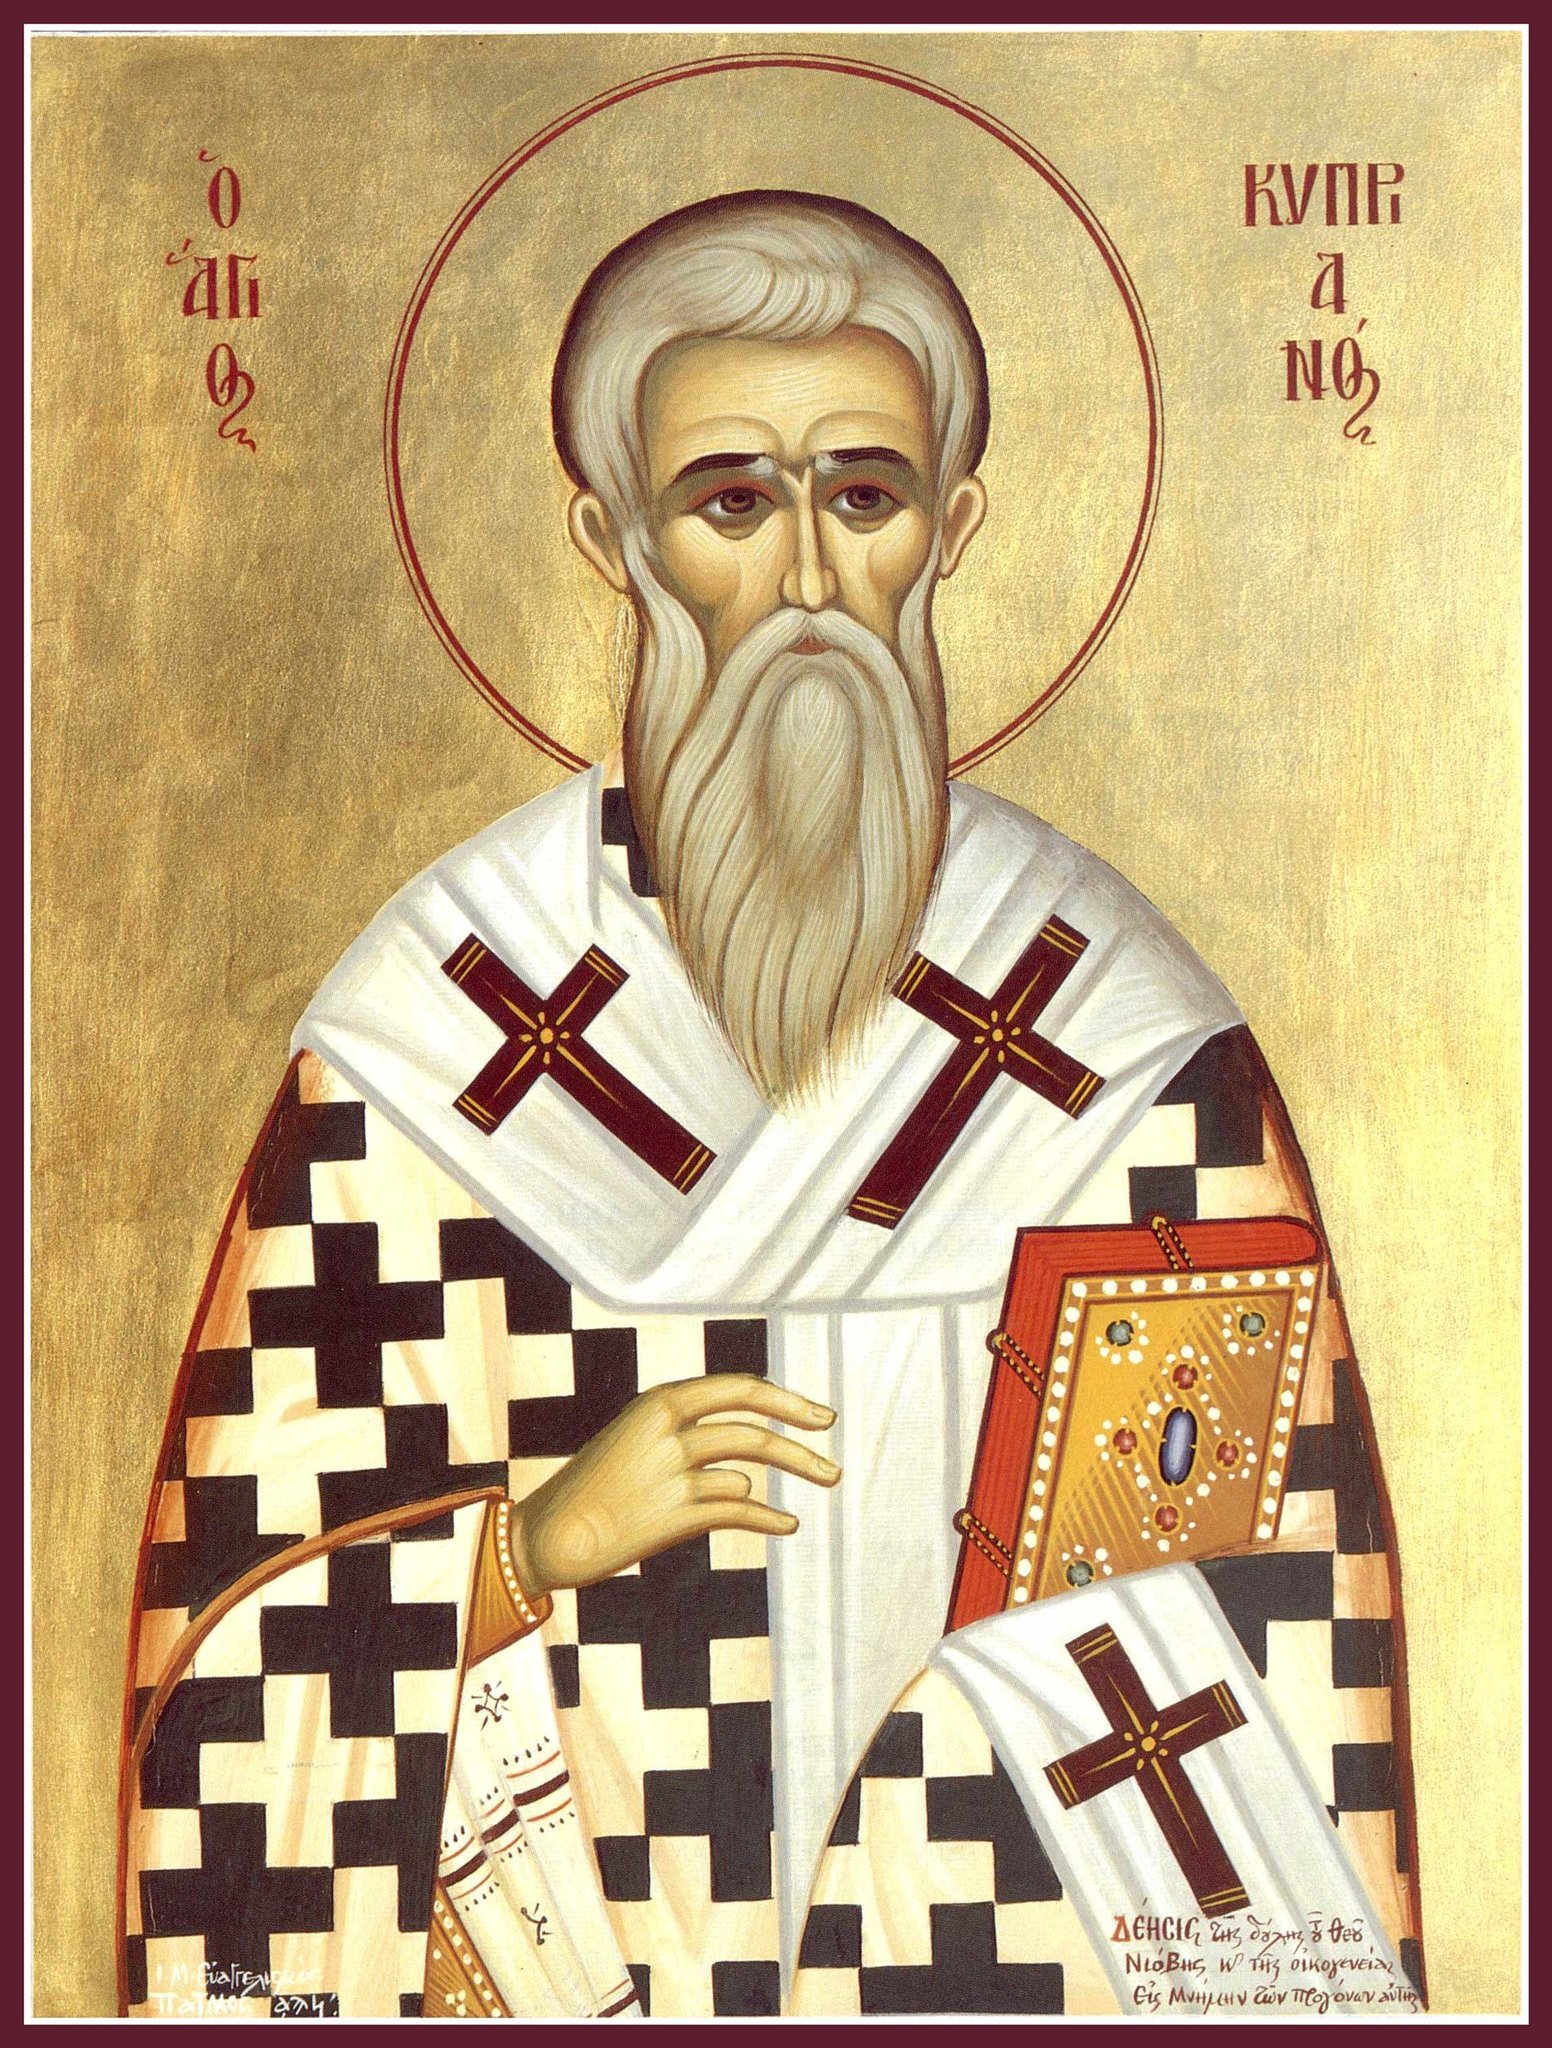 Biskop Kipriyan i Antiokia bønn